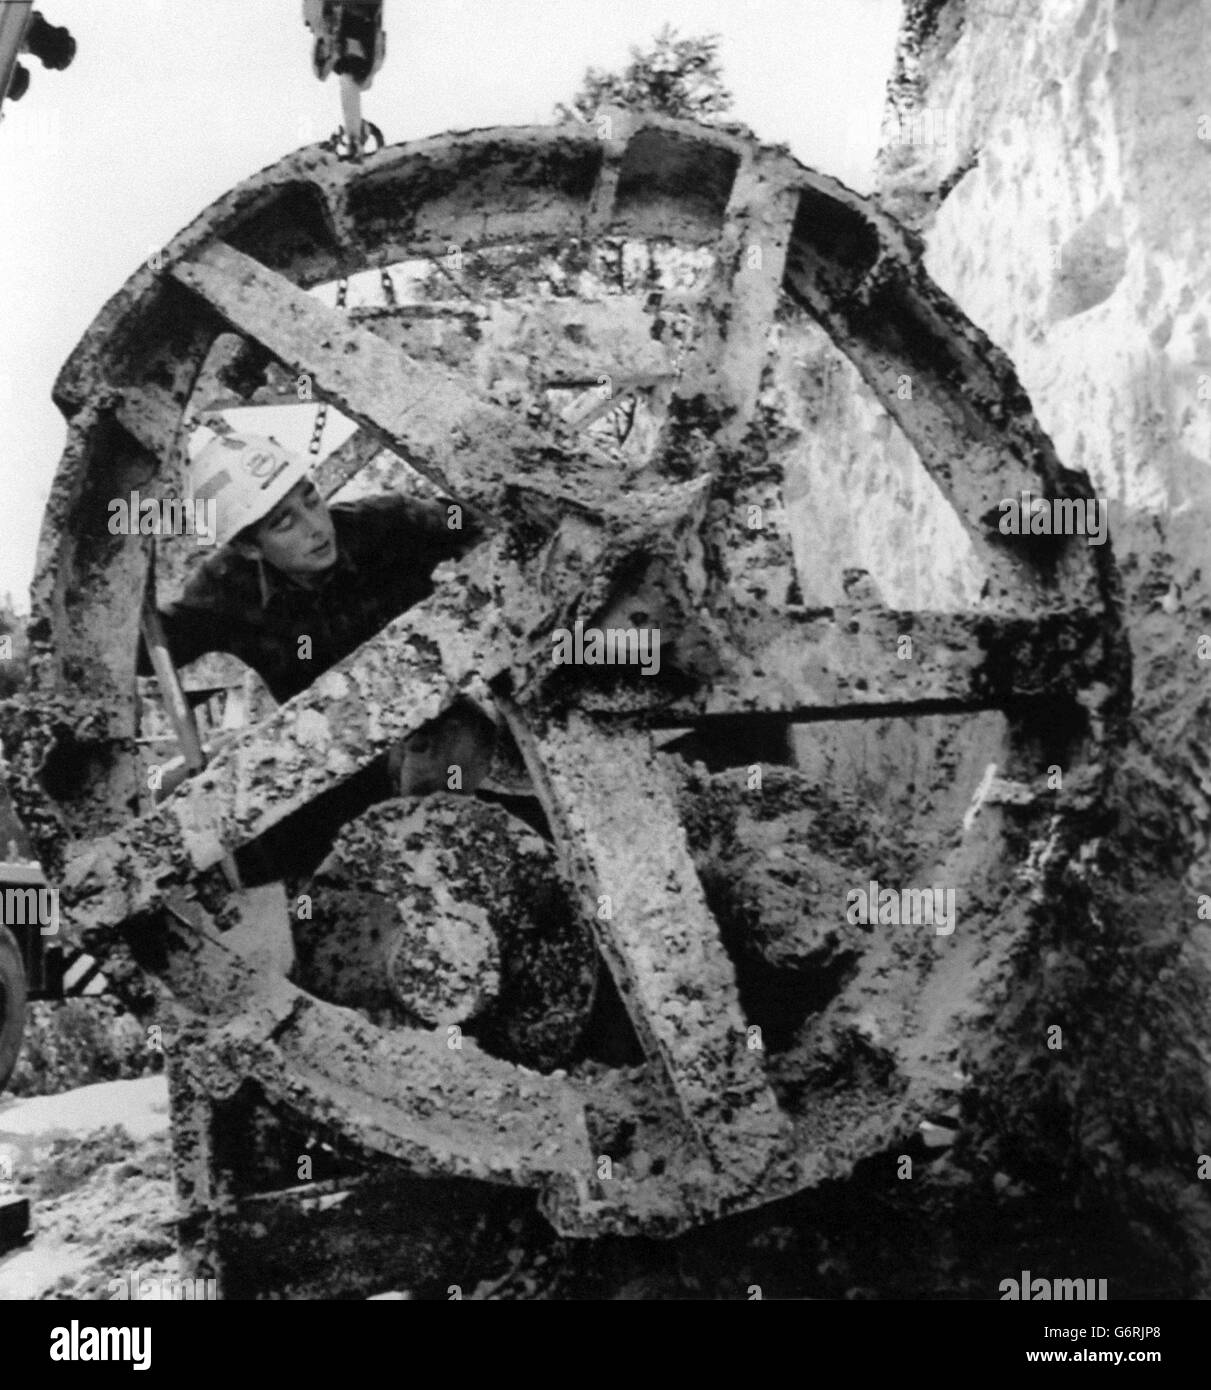 Un ingénieur d'Eurotunnel inspectant une machine d'alésage de tunnels Whitaker, qui a été mise à la terre à Hythe, dans le Kent.La machine a été utilisée dans un projet en 1922-23 pour creuser un tunnel exploratoire, qui a été abandonné plus tard cette année-là et est resté dans le tunnel depuis jusqu'à ce qu'Eurotunnel l'ait excavé. Banque D'Images